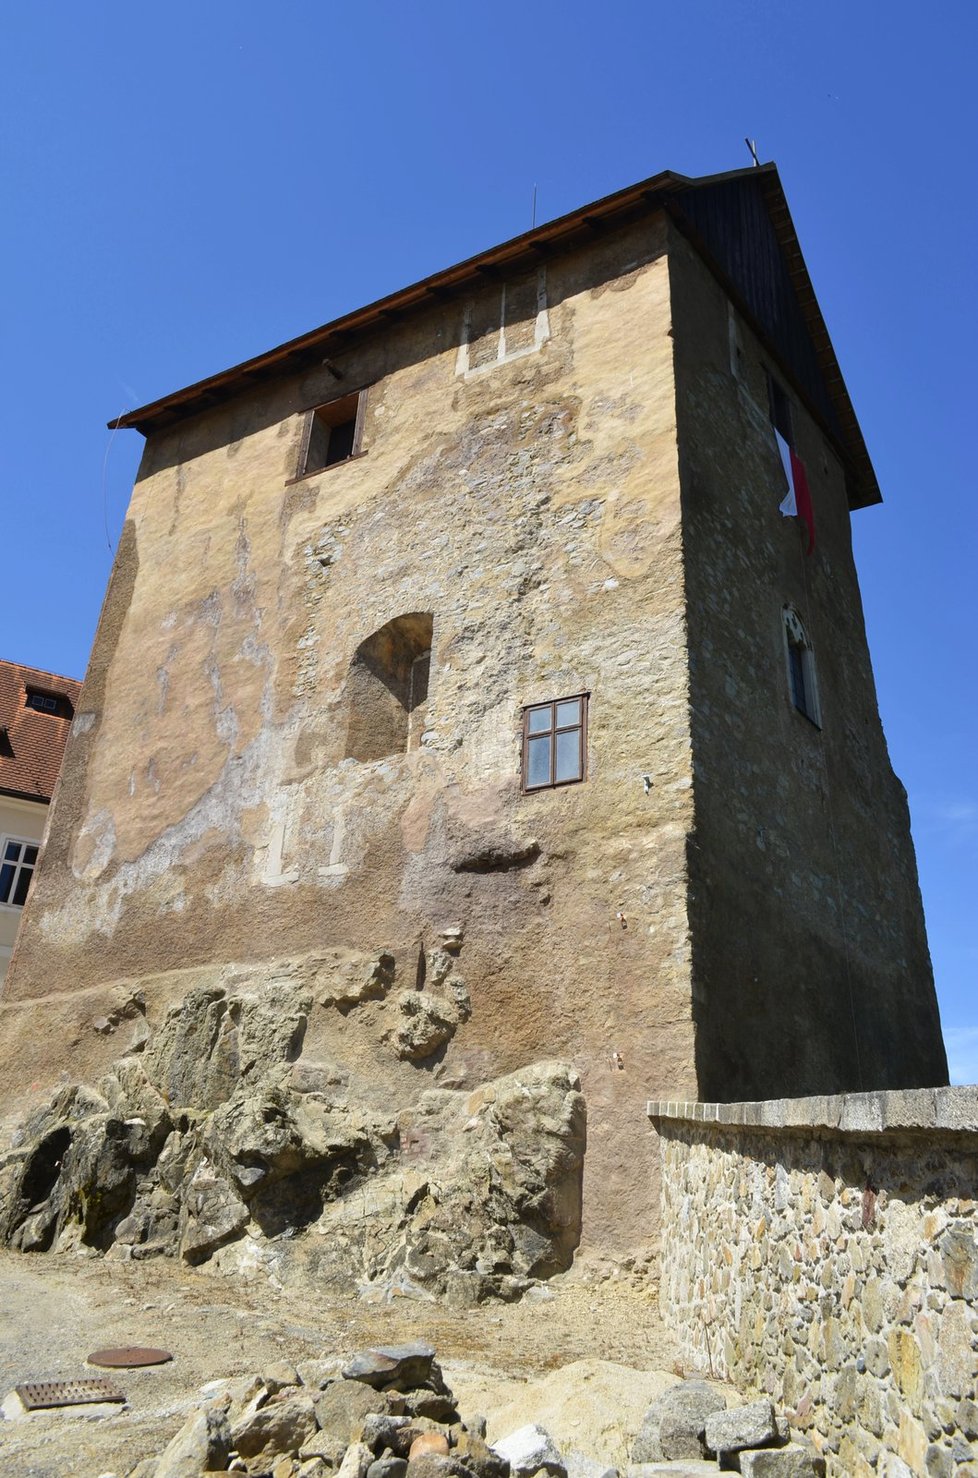 Tohle je věž hradu, kde se relikviář sv. Maura a láhve s víny našly